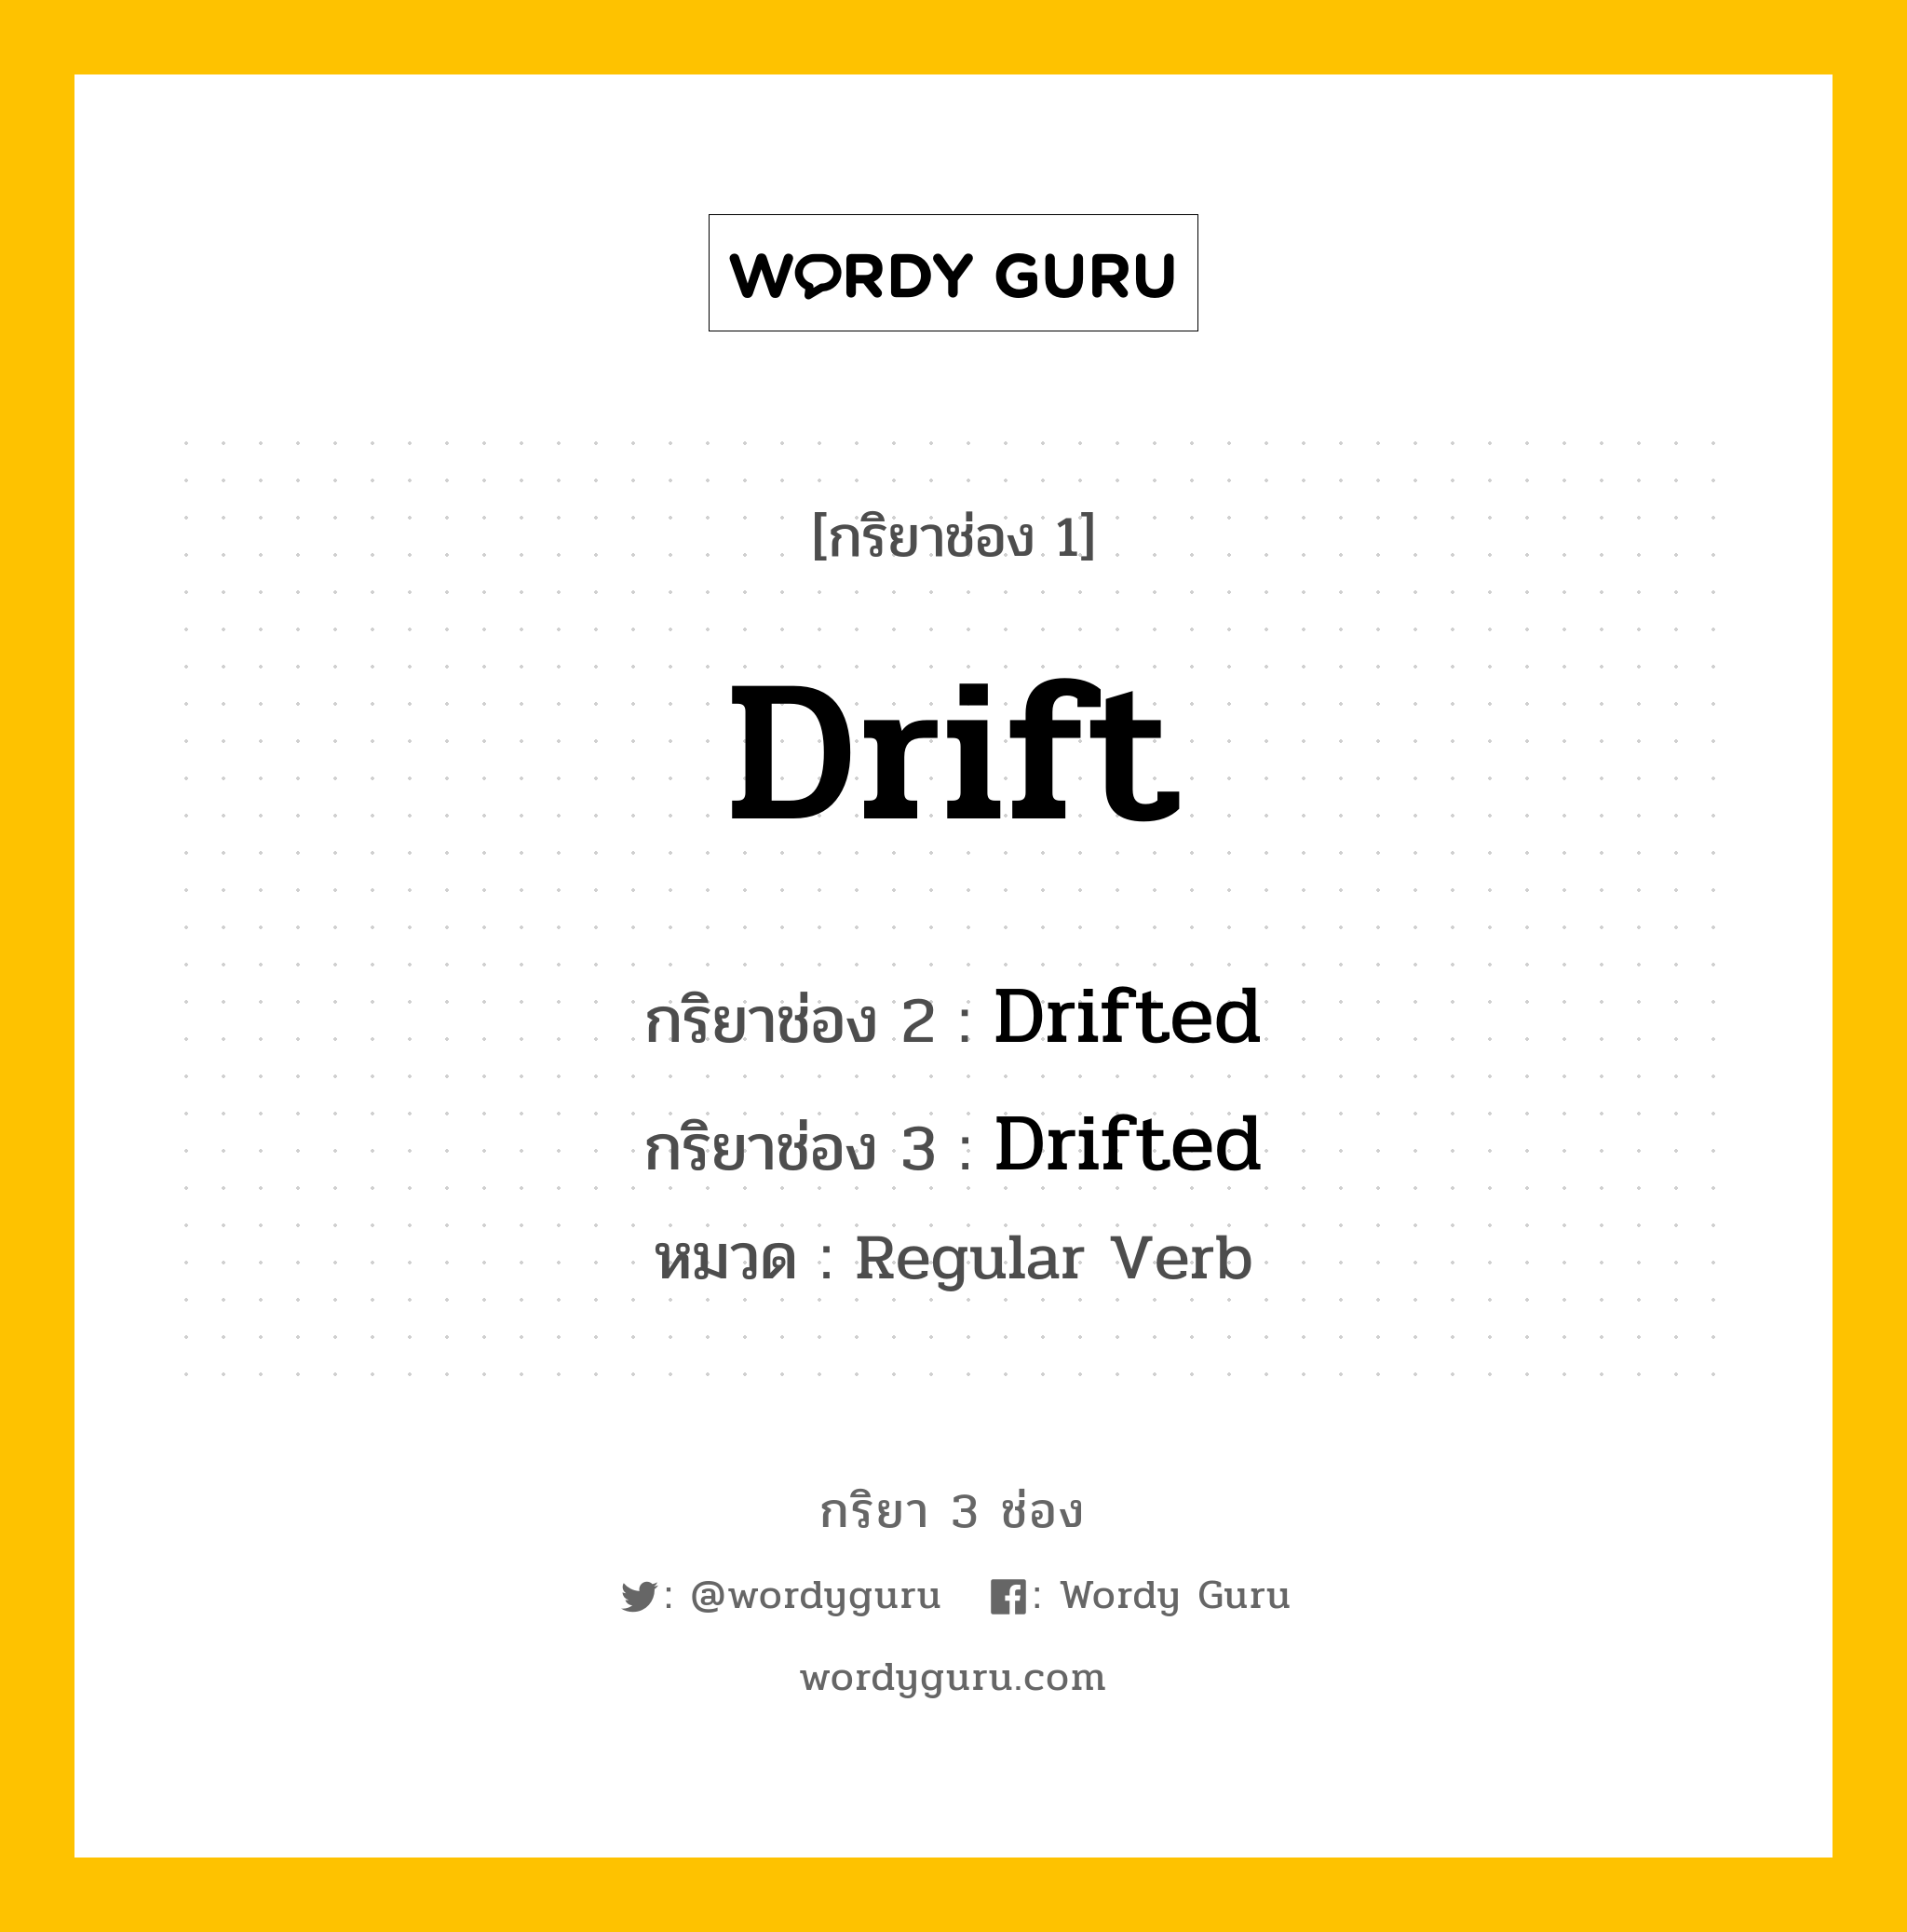 กริยา 3 ช่อง: Drift ช่อง 2 Drift ช่อง 3 คืออะไร, กริยาช่อง 1 Drift กริยาช่อง 2 Drifted กริยาช่อง 3 Drifted หมวด Regular Verb หมวด Regular Verb